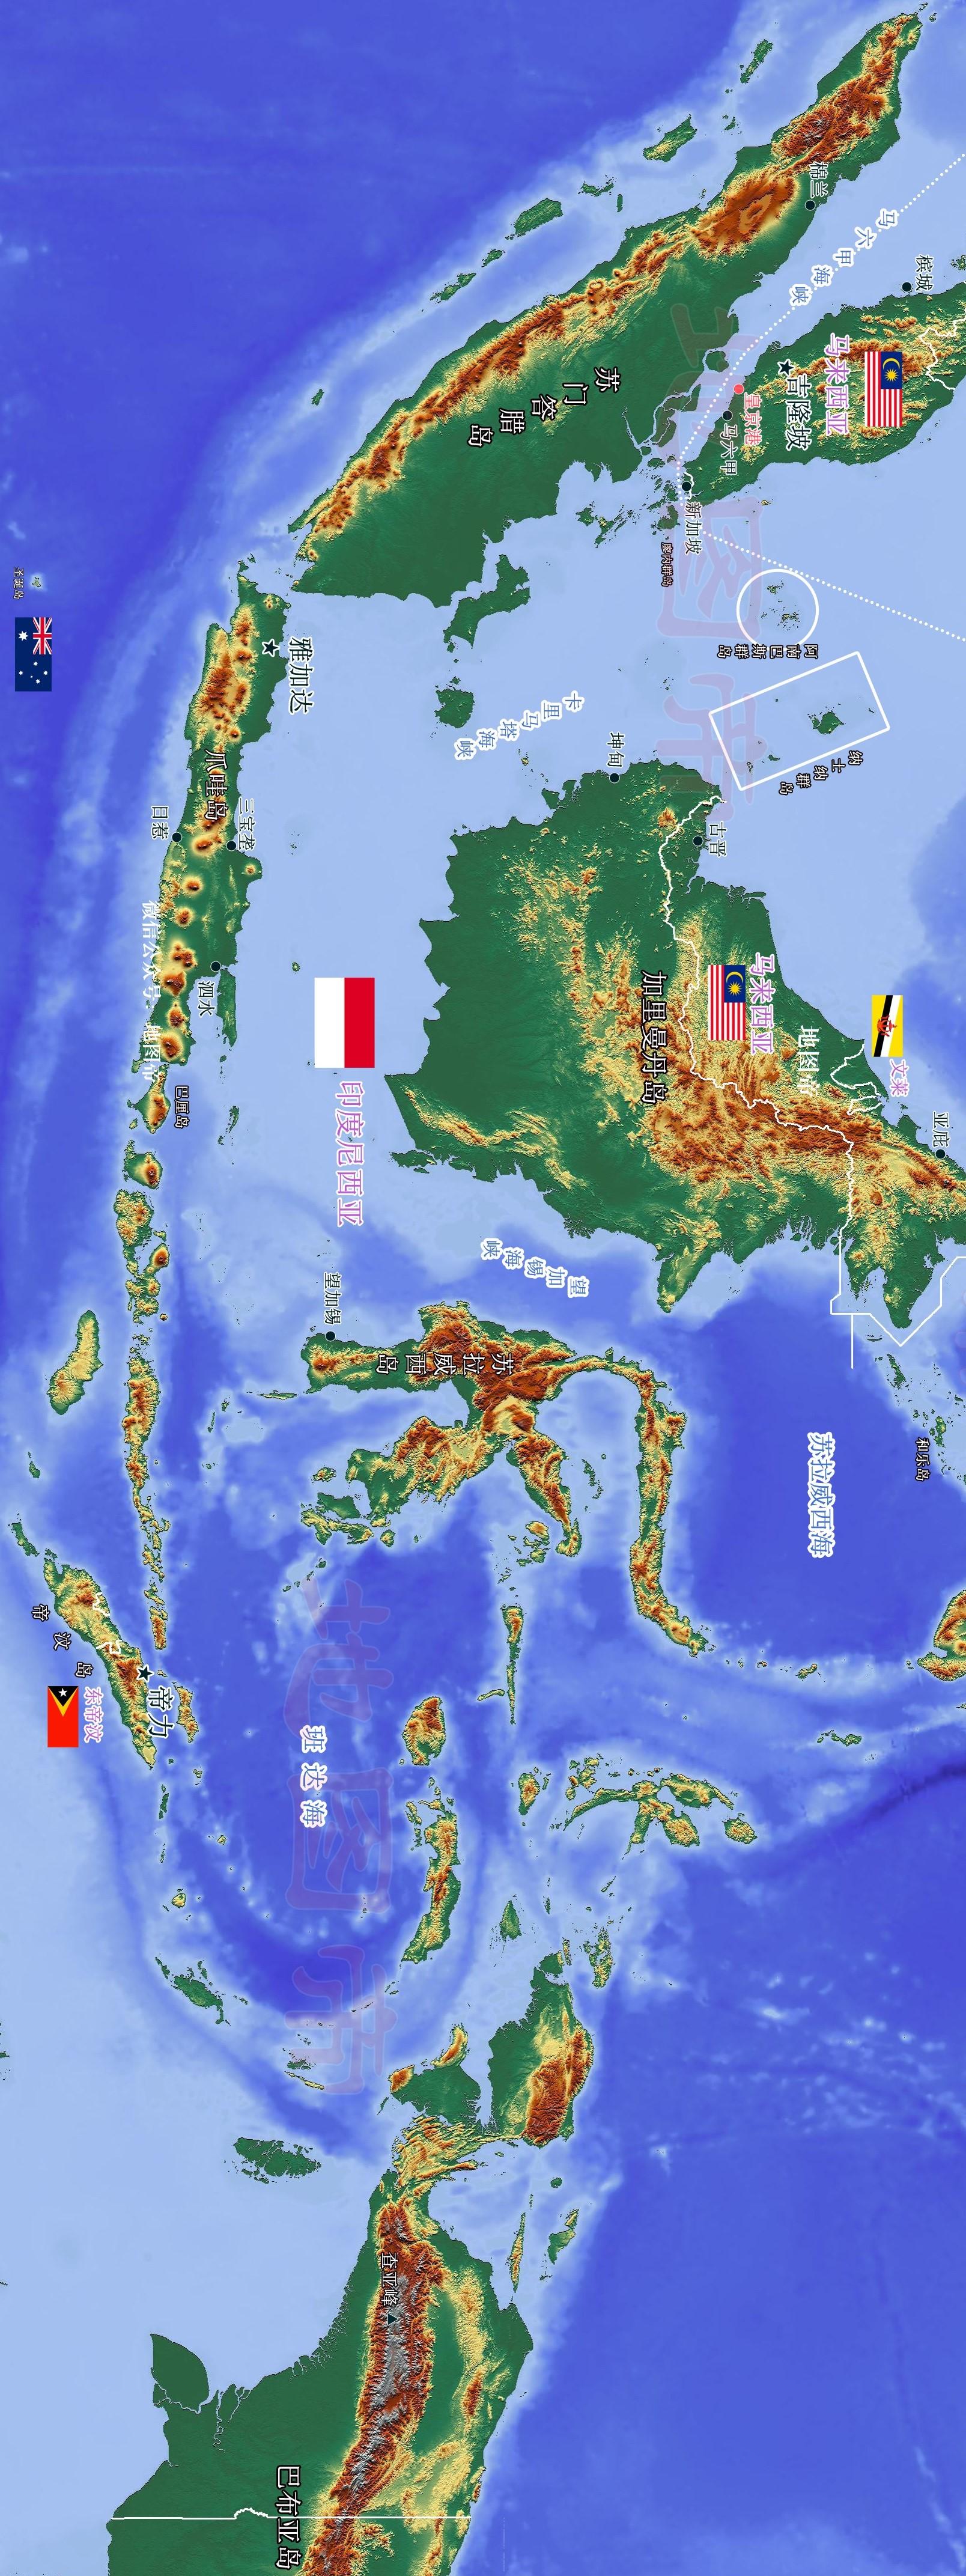 万岛之国,世界前十三大岛独占五个,不是日本英